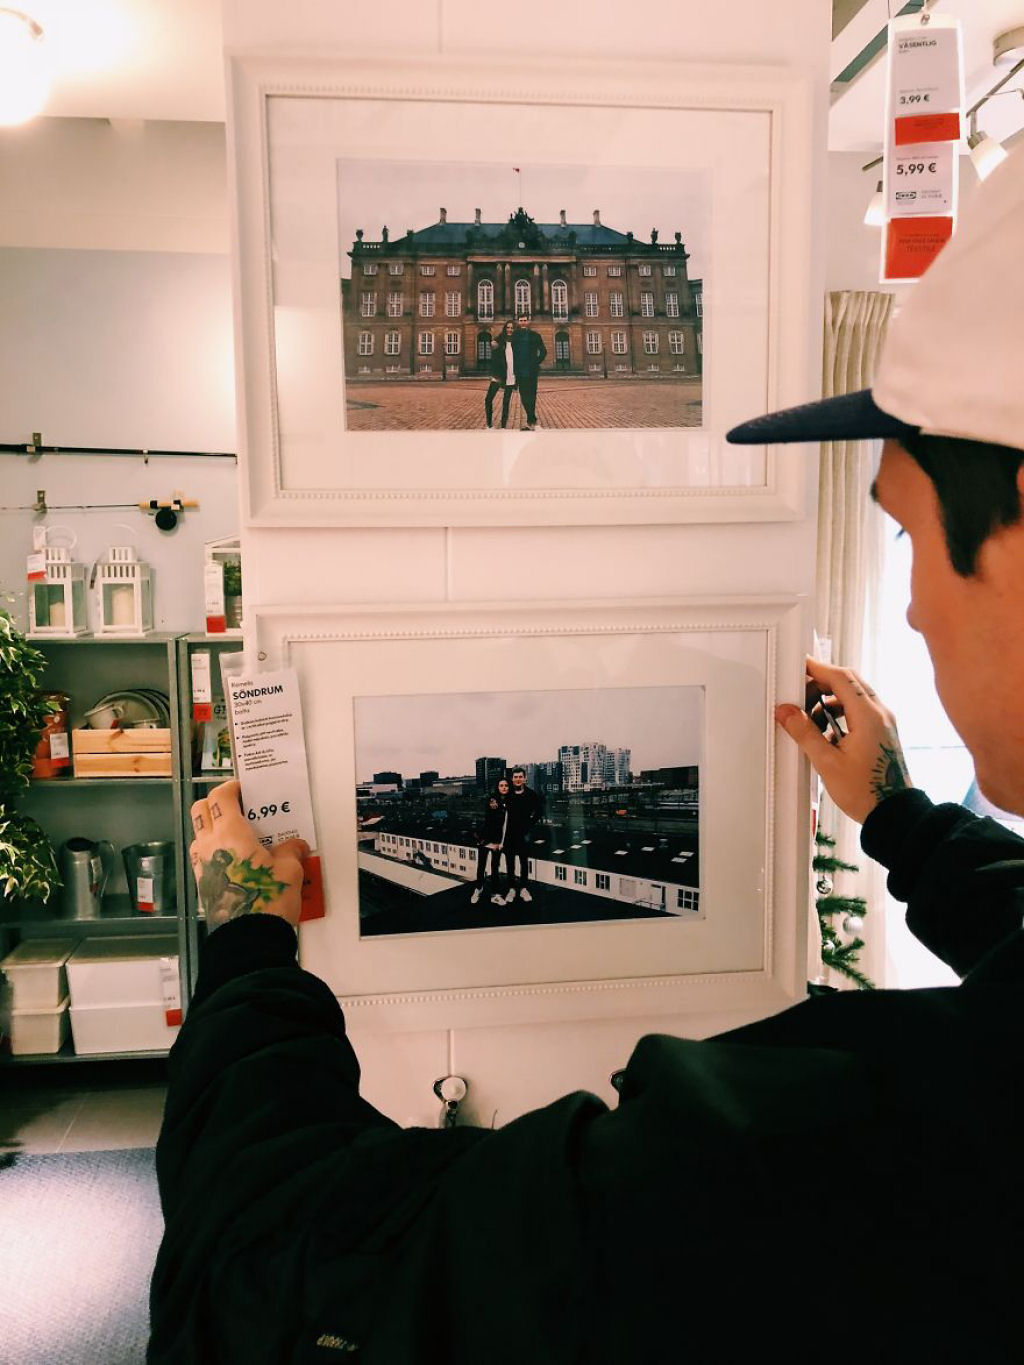 Casal substituiu todas as fotografias emolduradas de uma loja Ikea com fotos deles mesmos 04